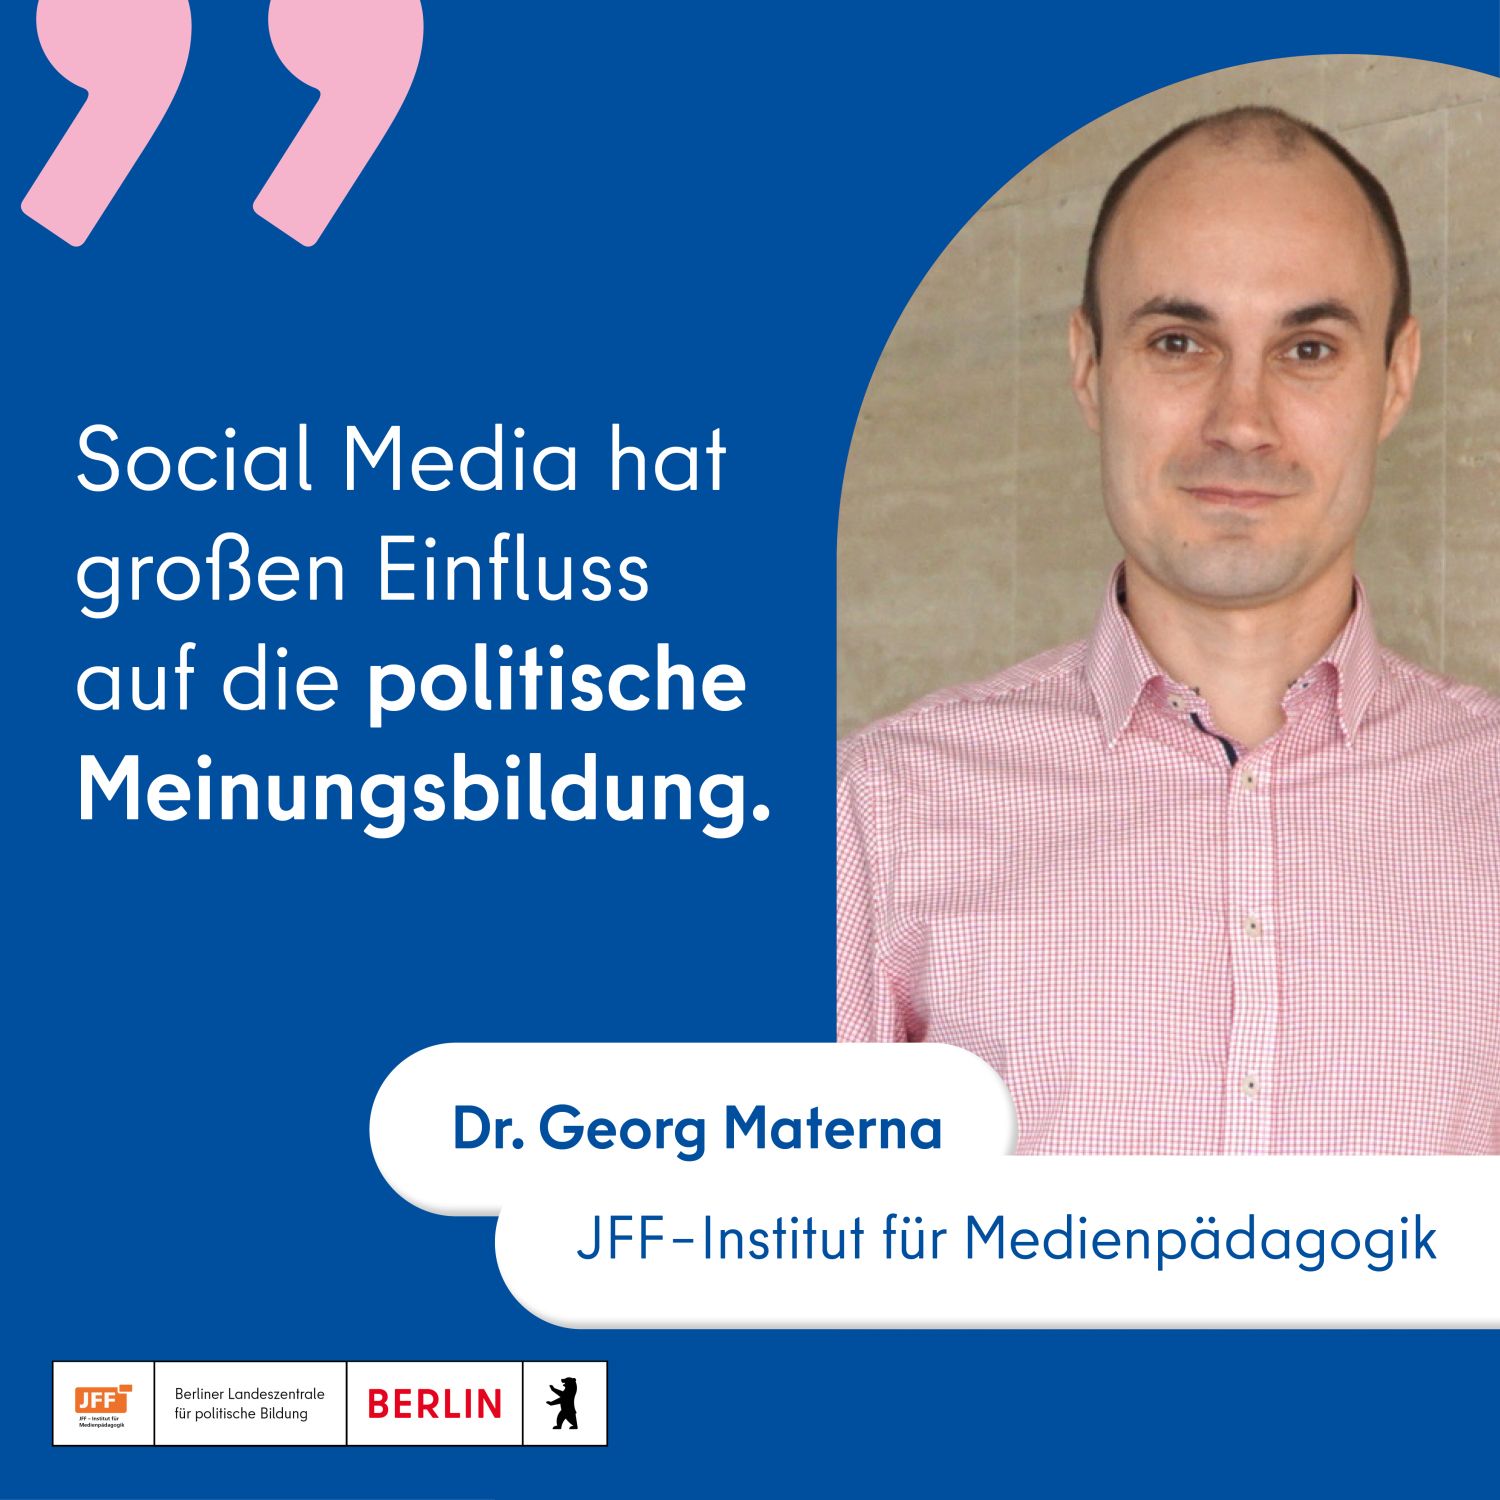 Foto von Dr. Georg Materna (JFF-Institut für Medienpädagogik) mit Zitat: "Social Media hat großen Einfluss auf die politische Meinungsbildung